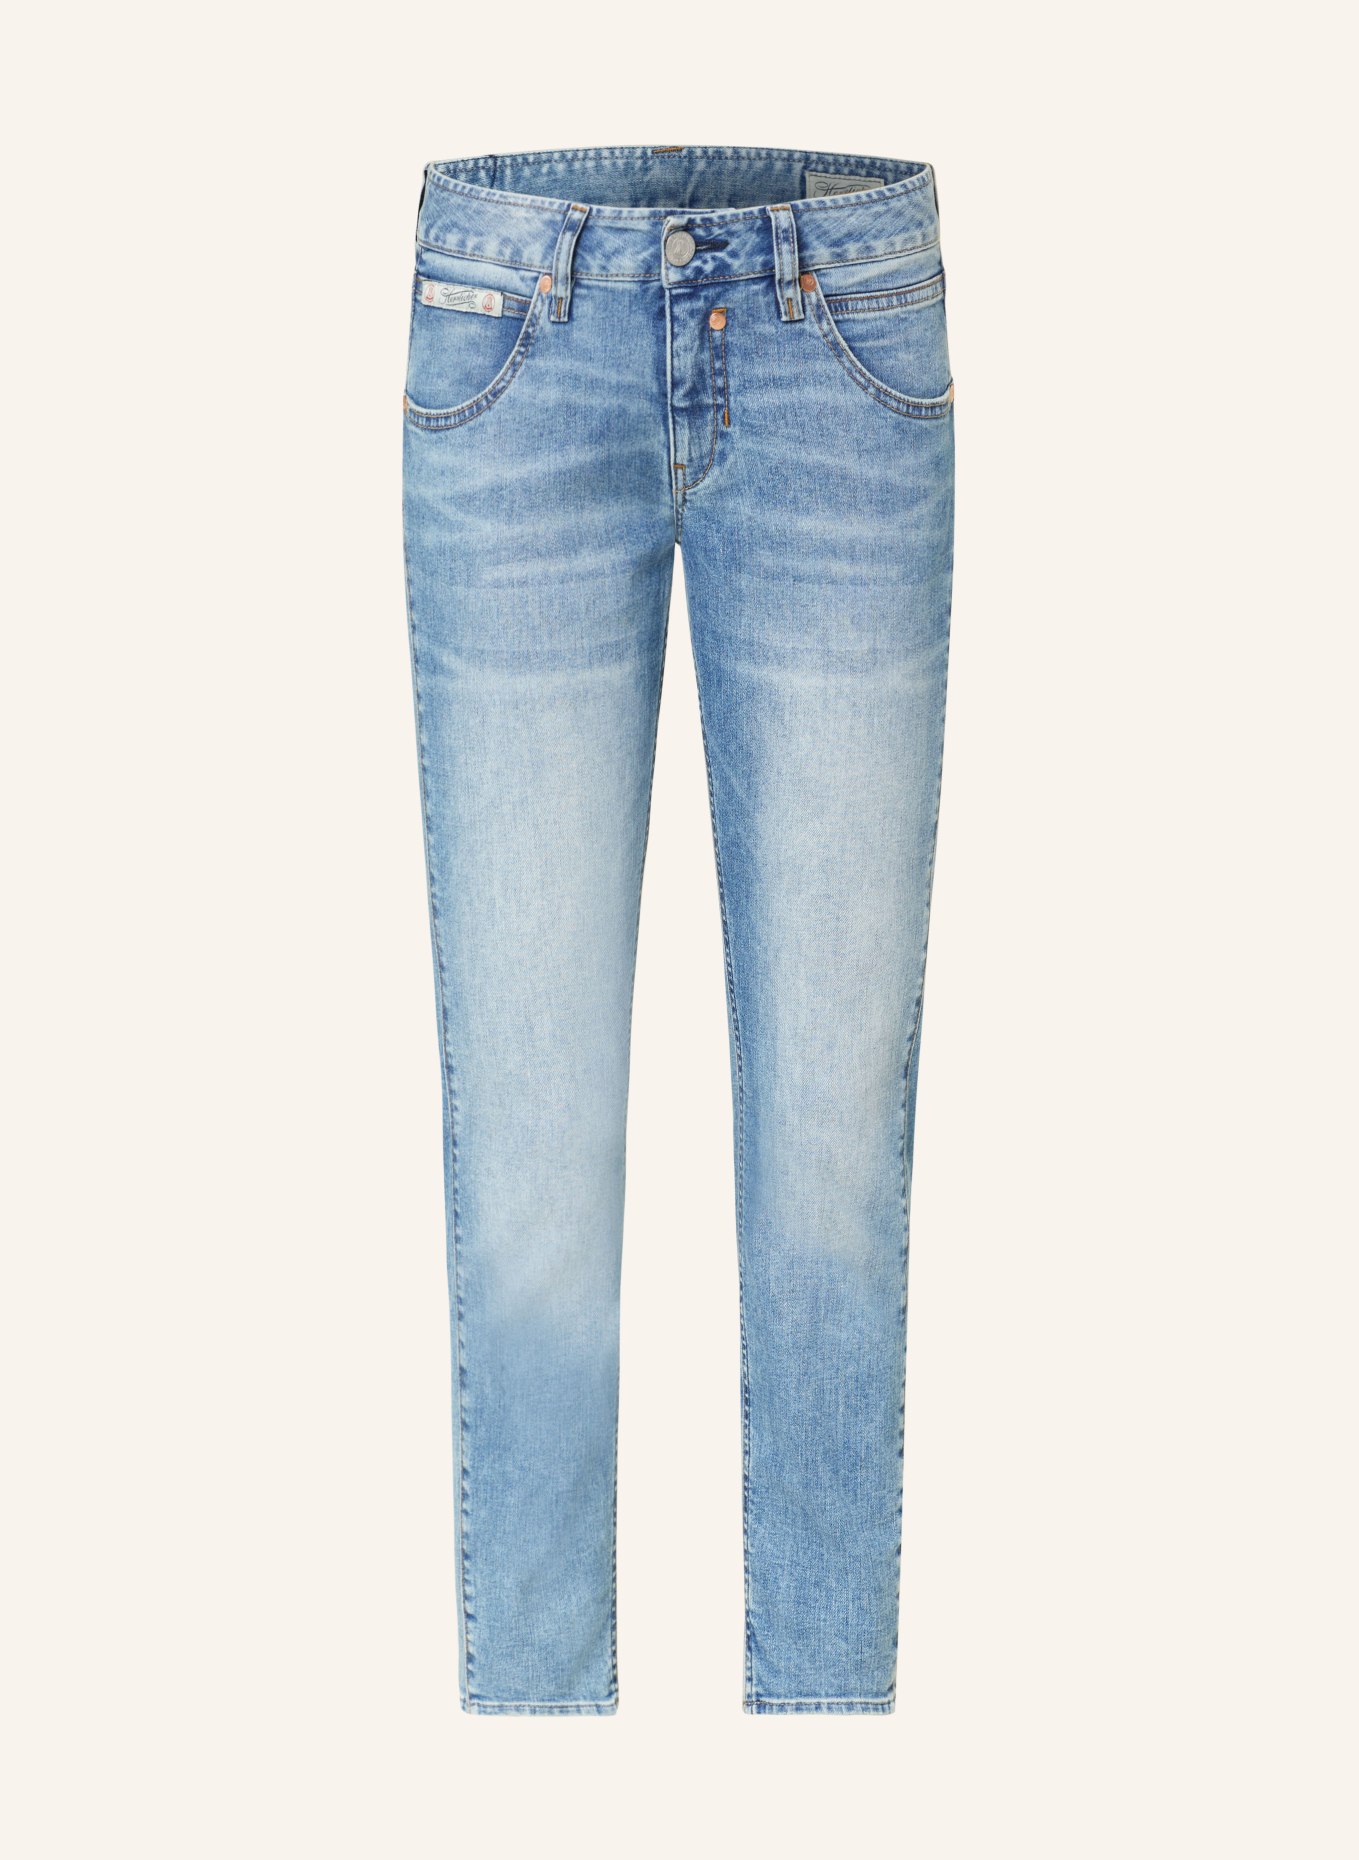 Herrlicher Skinny Jeans TOUCH, Farbe: 60 aged (Bild 1)